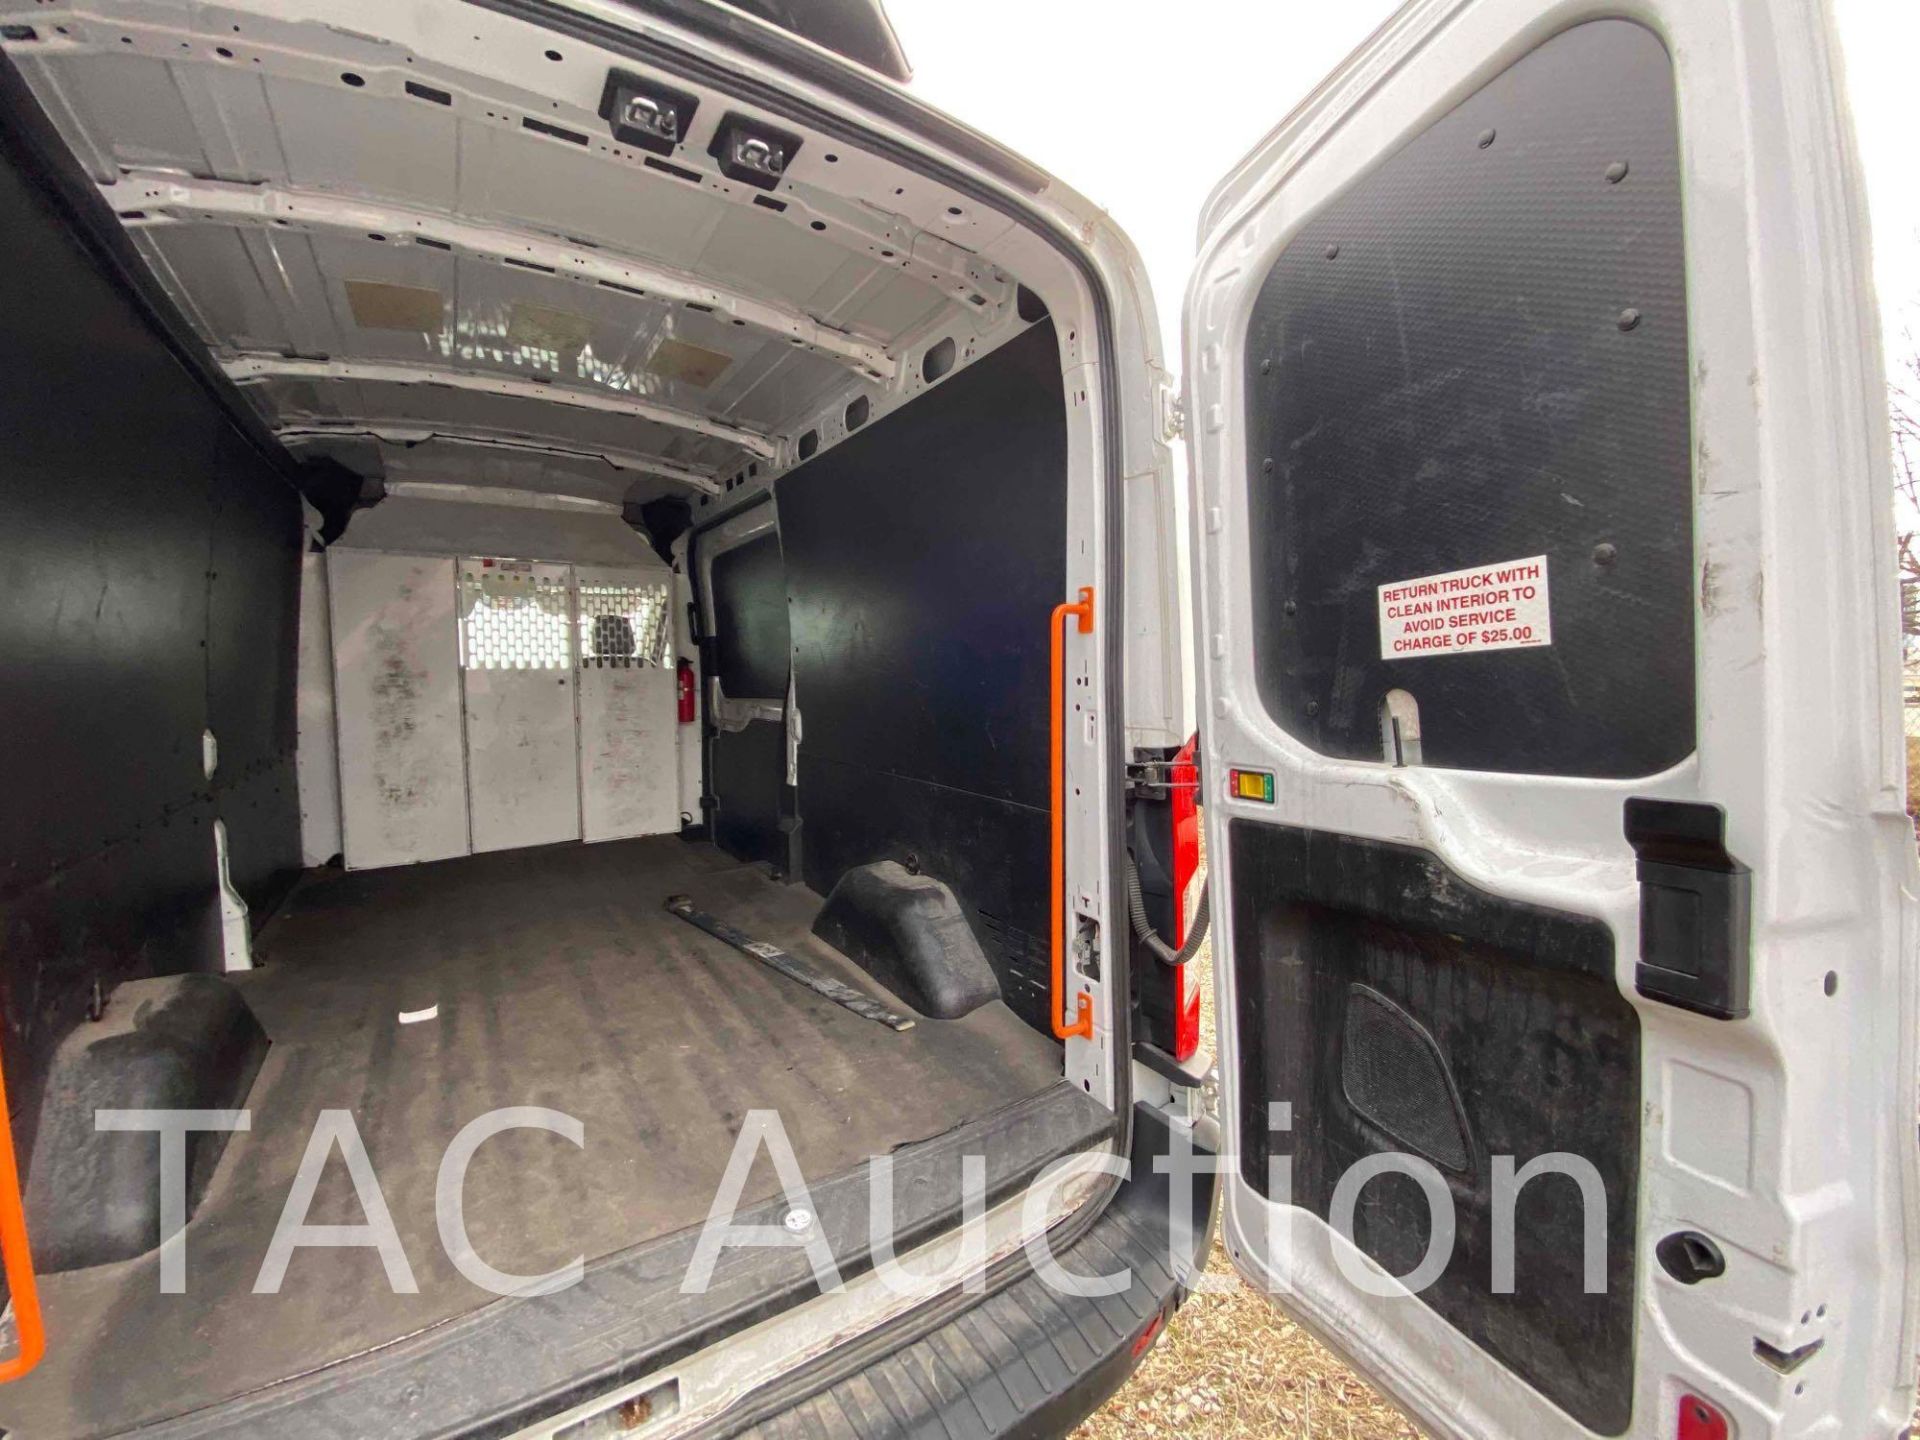 2019 Ford Transit 150 Cargo Van - Image 12 of 42